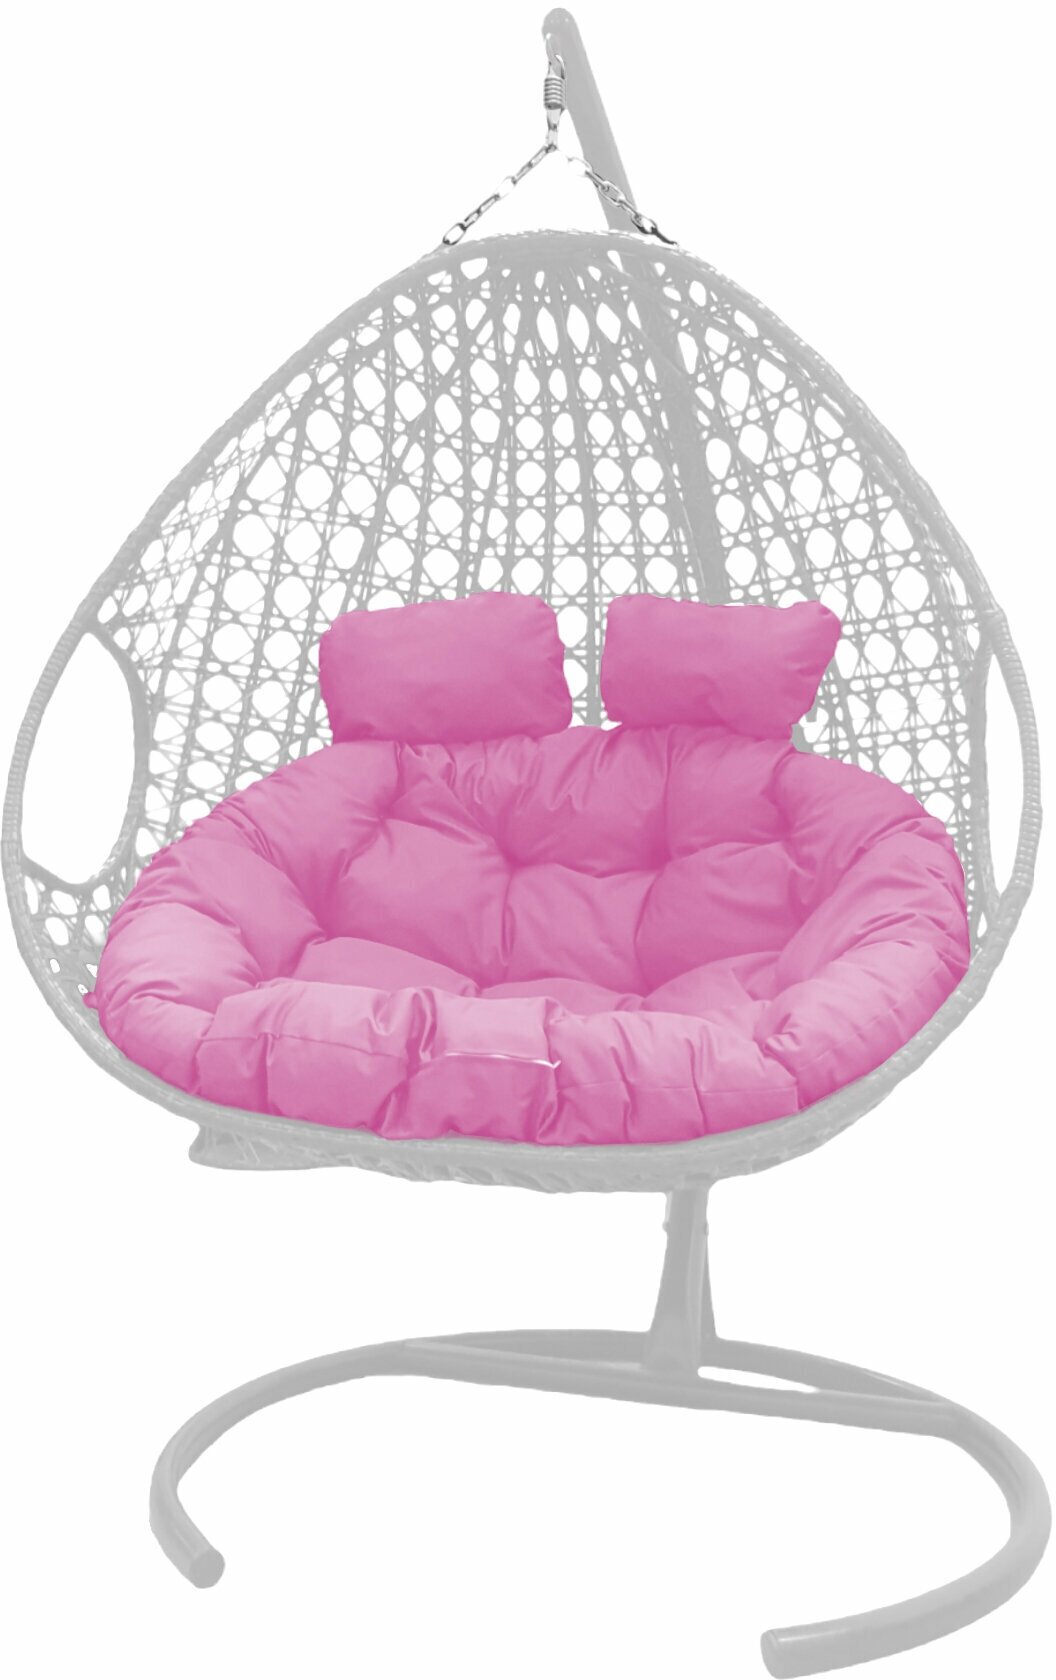 Подвесное кресло белое M-Group Для двоих люкс розовая подушка - фотография № 11